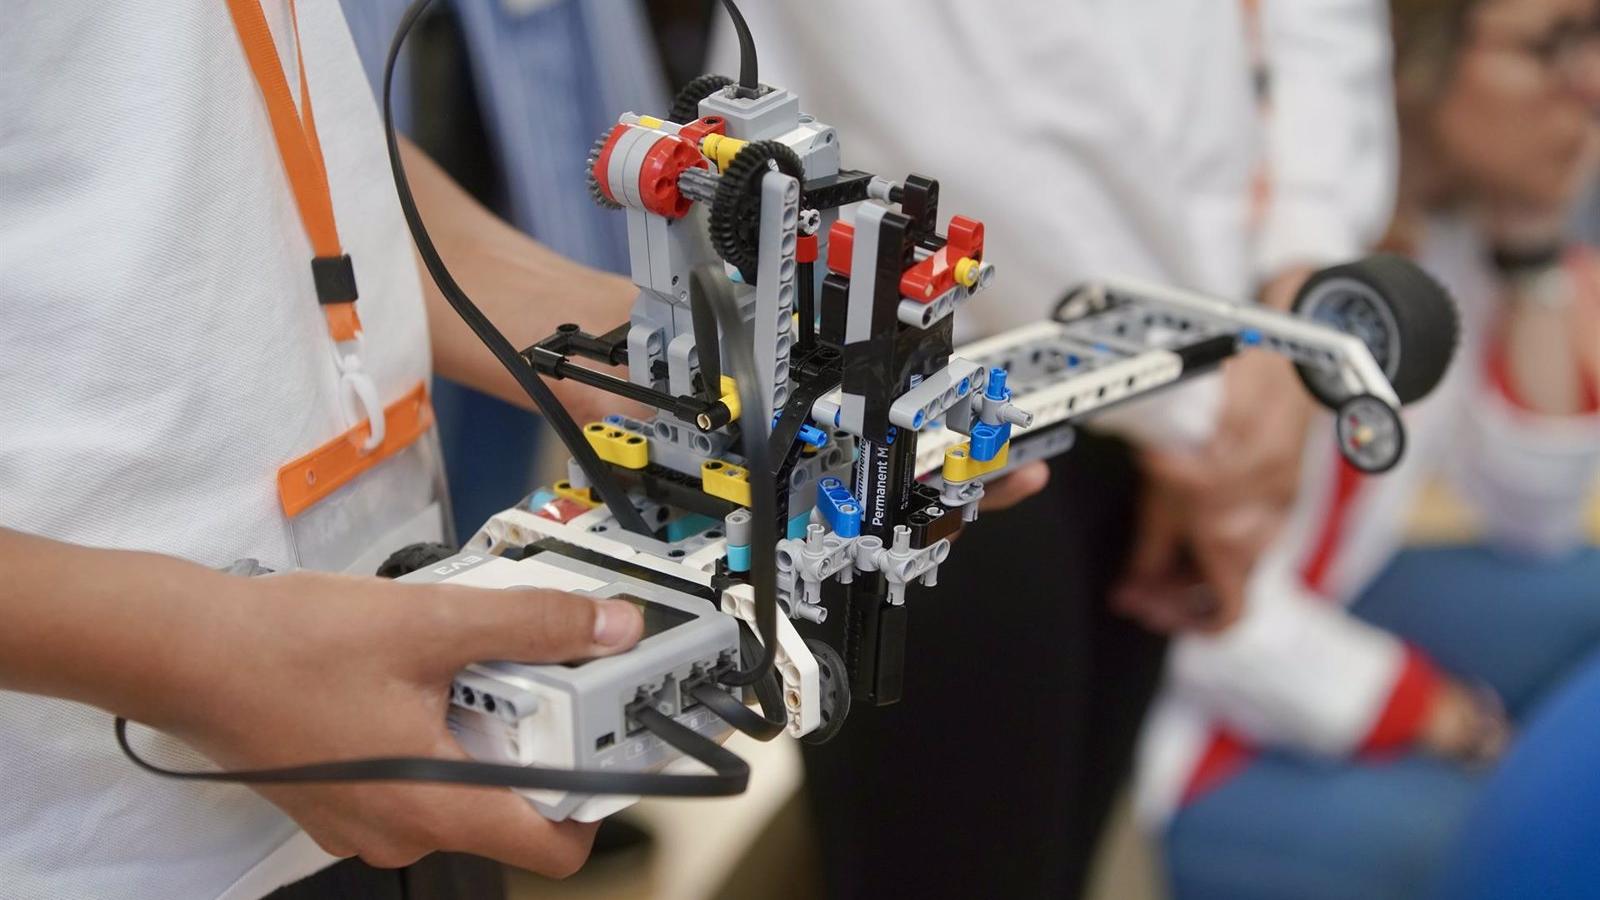 Final del torneo de robótica 'Desafío Las Rozas' en Madrid